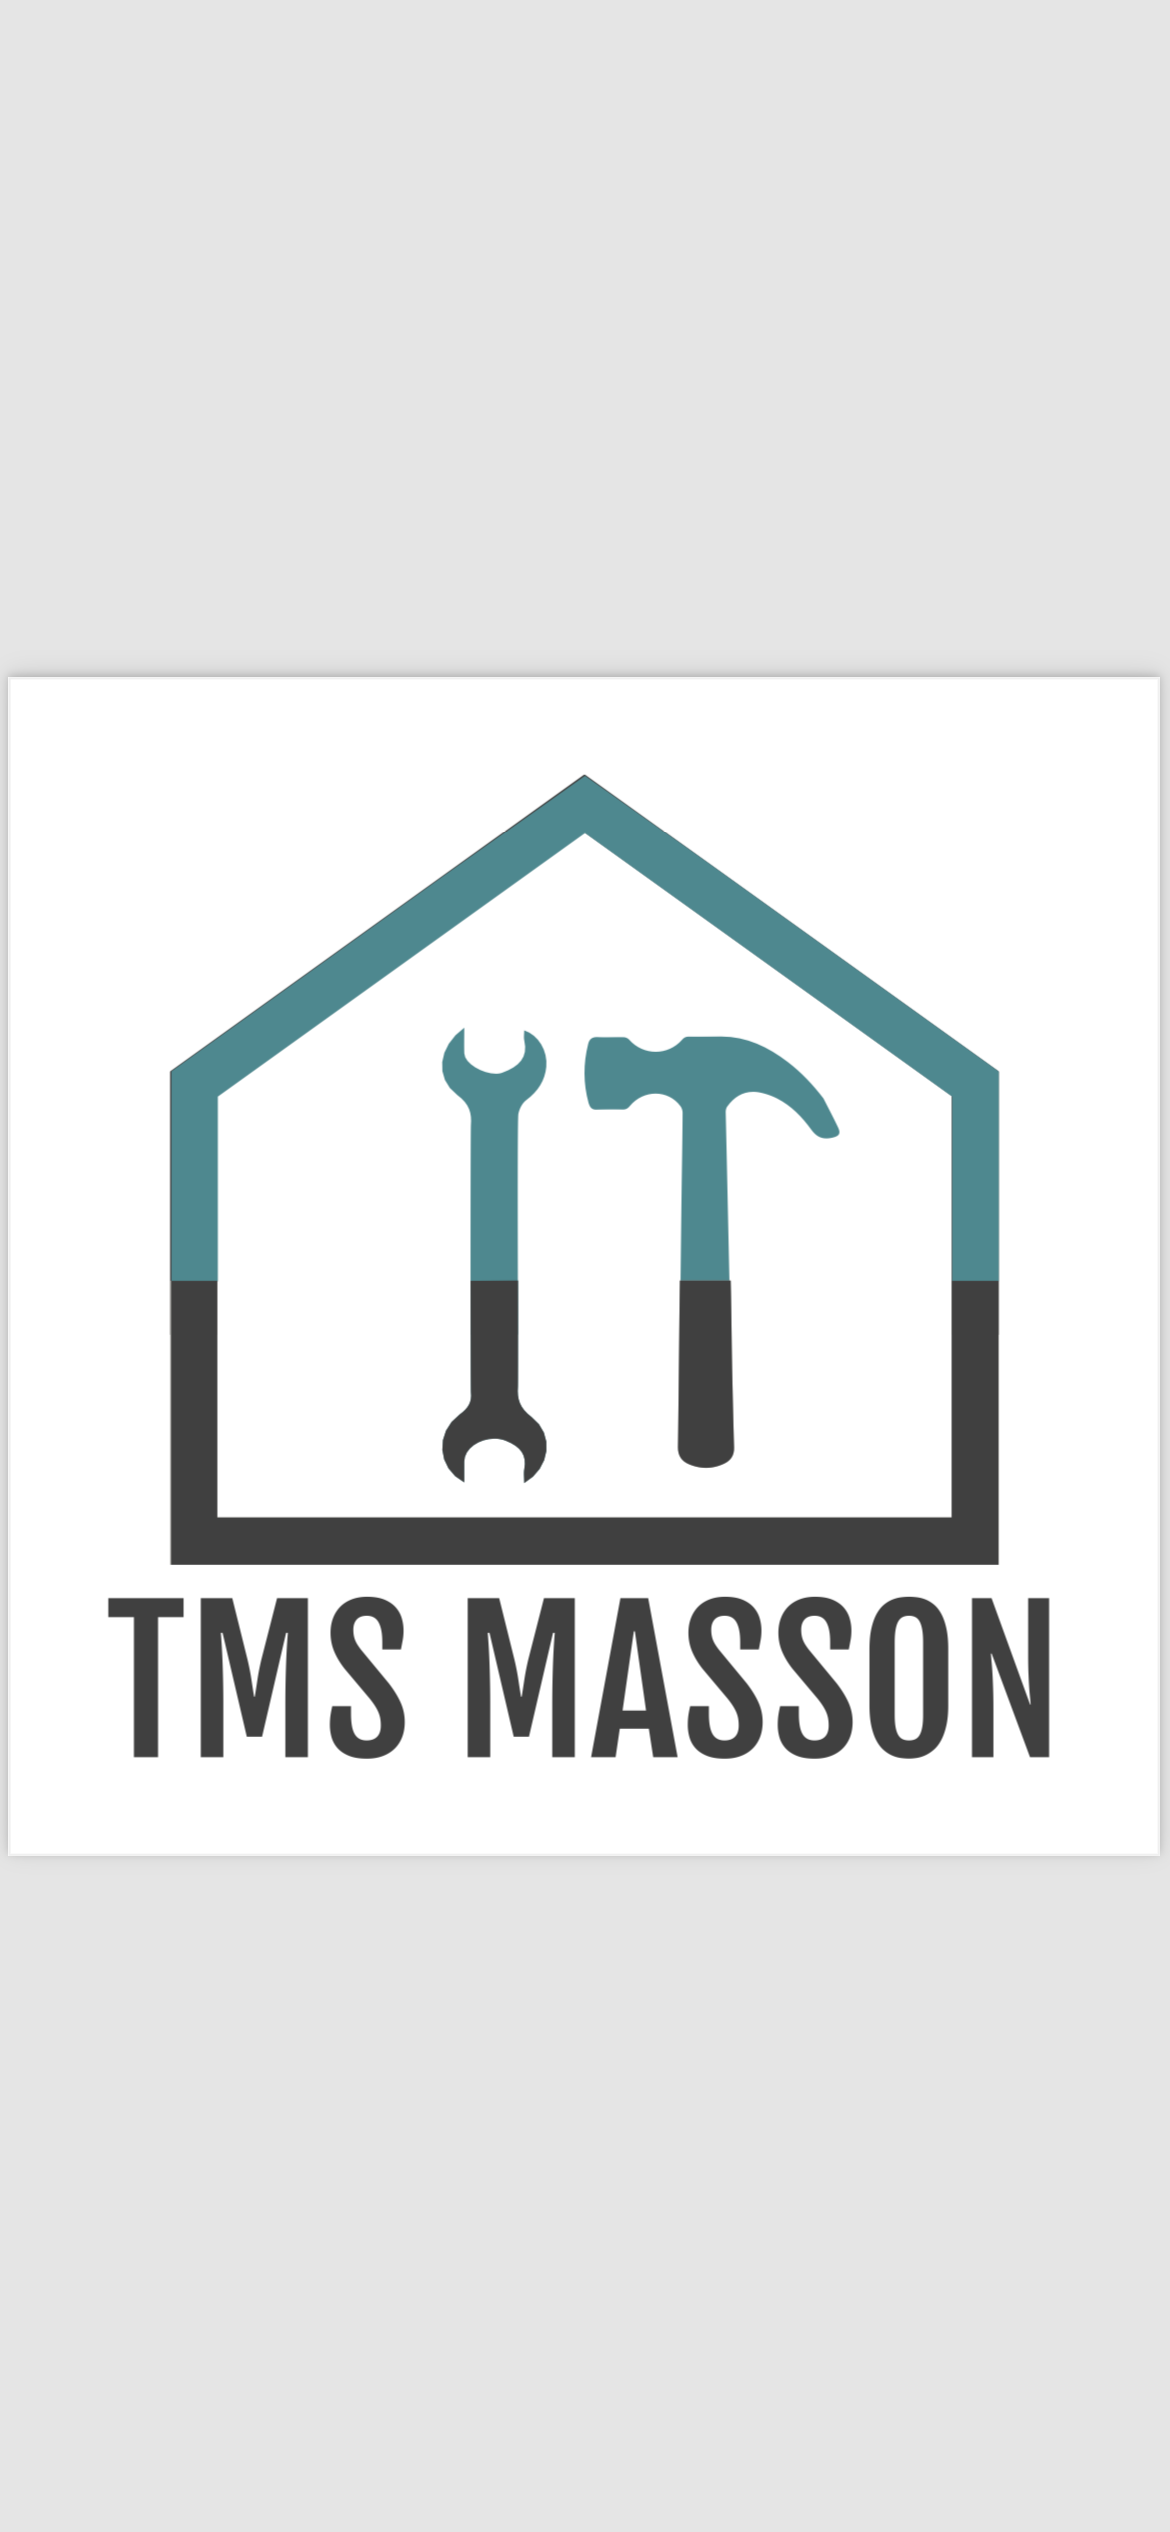 Logo de Tms masson, société de travaux en Démolition et transport de gravats